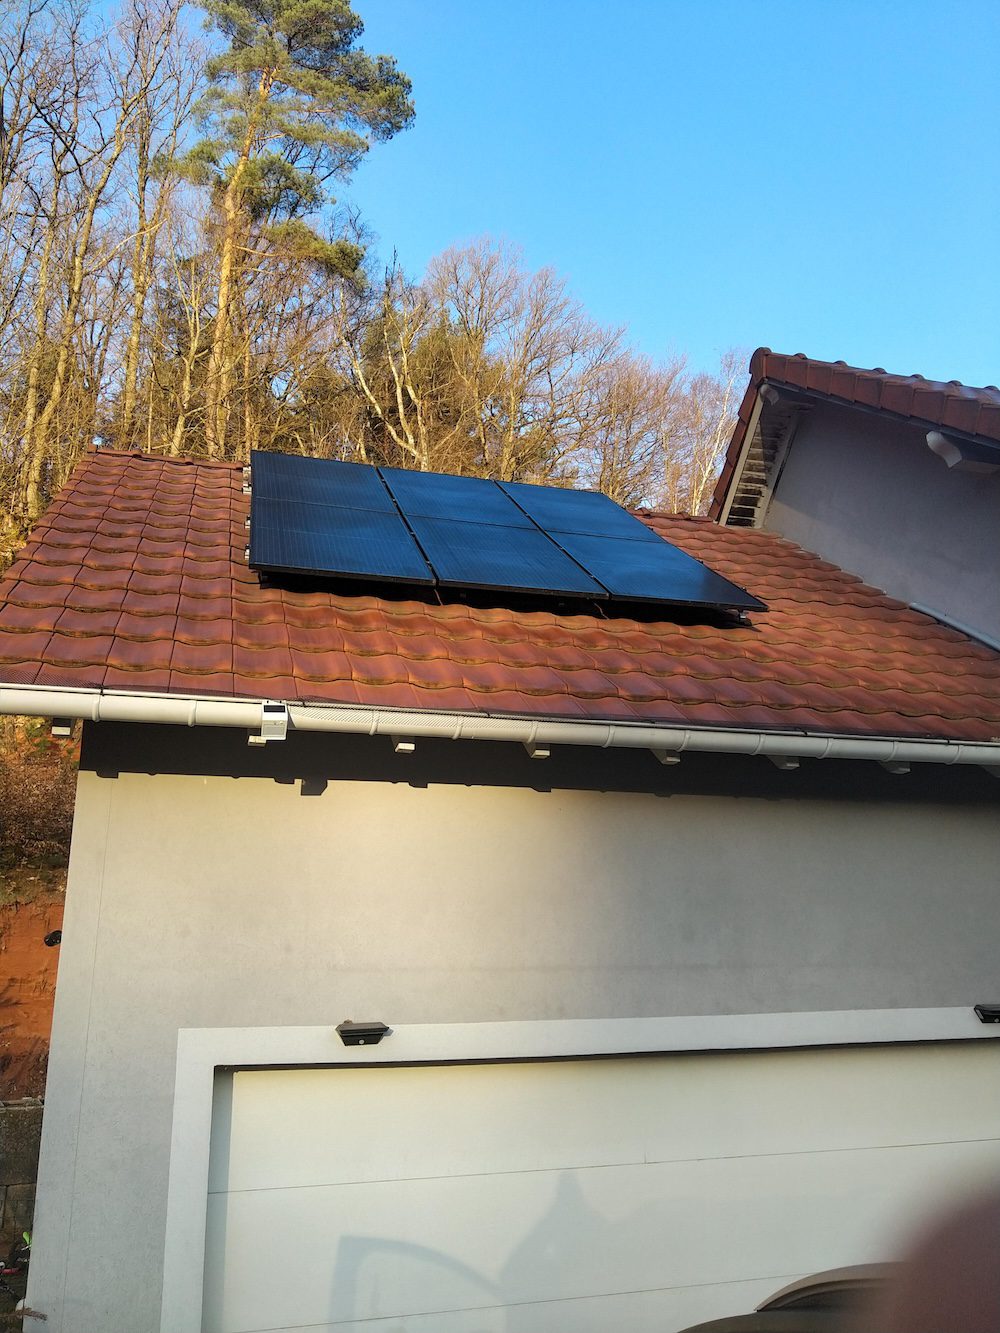 <span class="popup-mms-4">Installations de panneaux solaires sur toiture inclinée - 2460W</span>